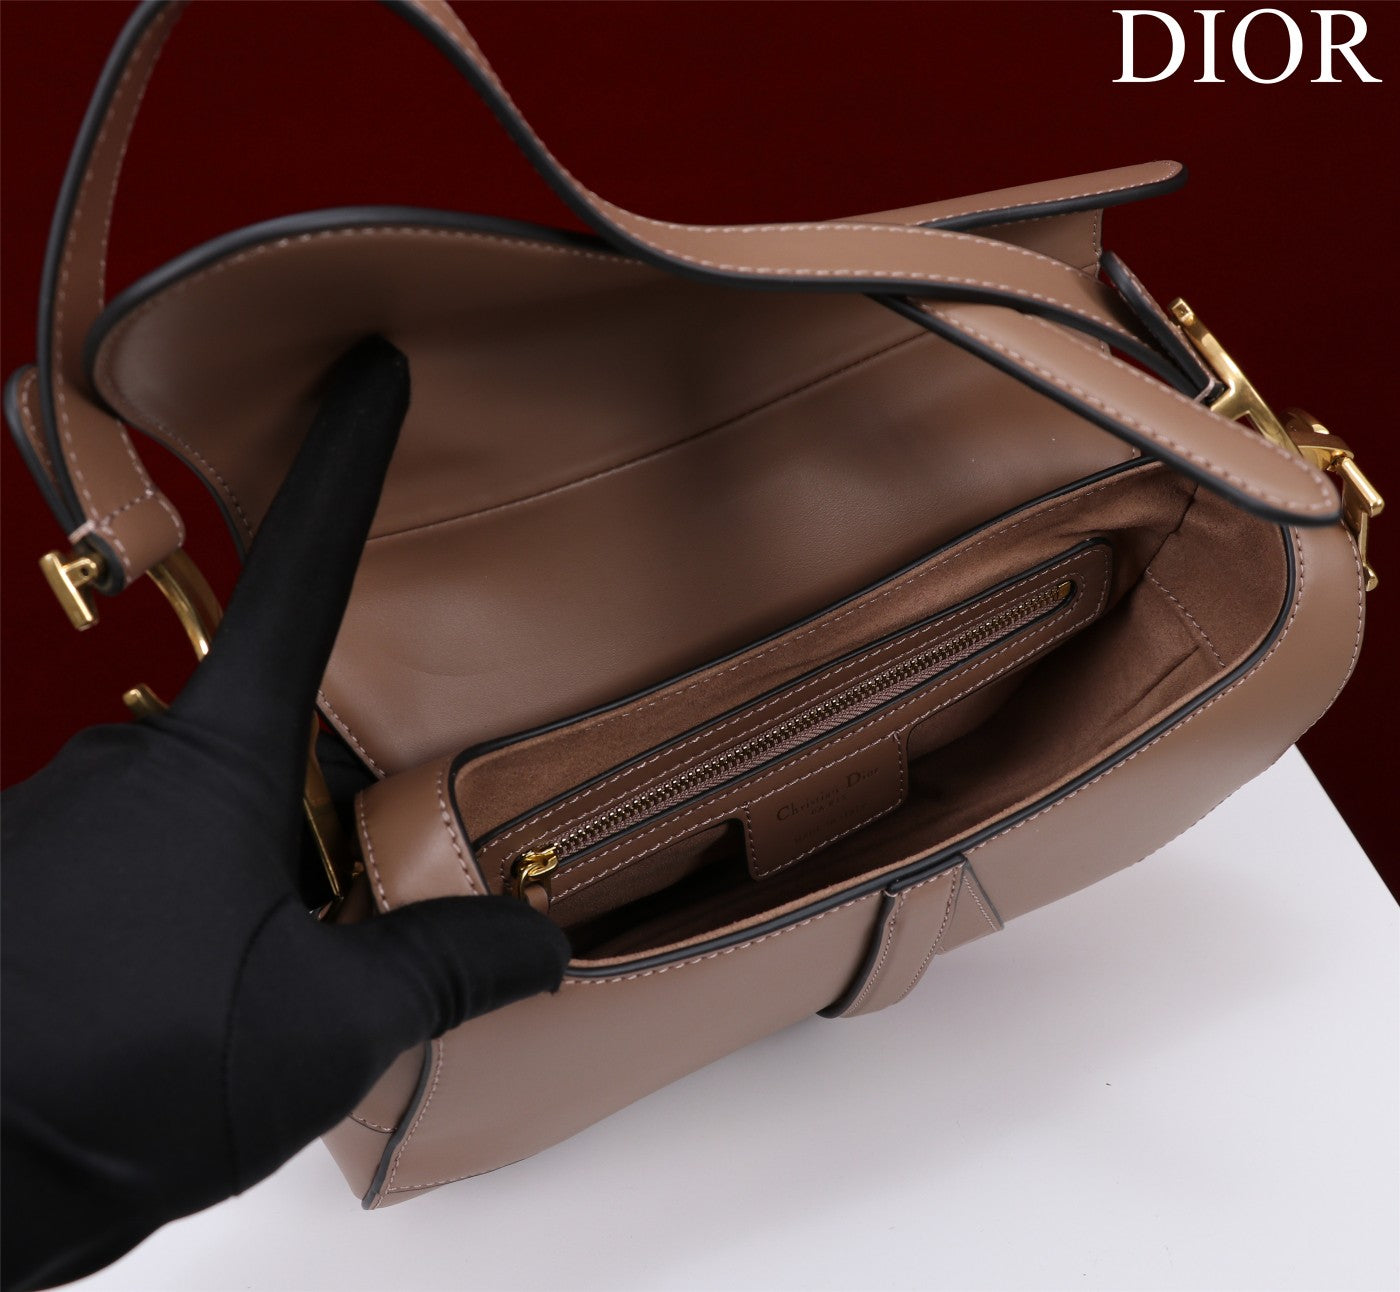 Dior Saddle Calfskin leather